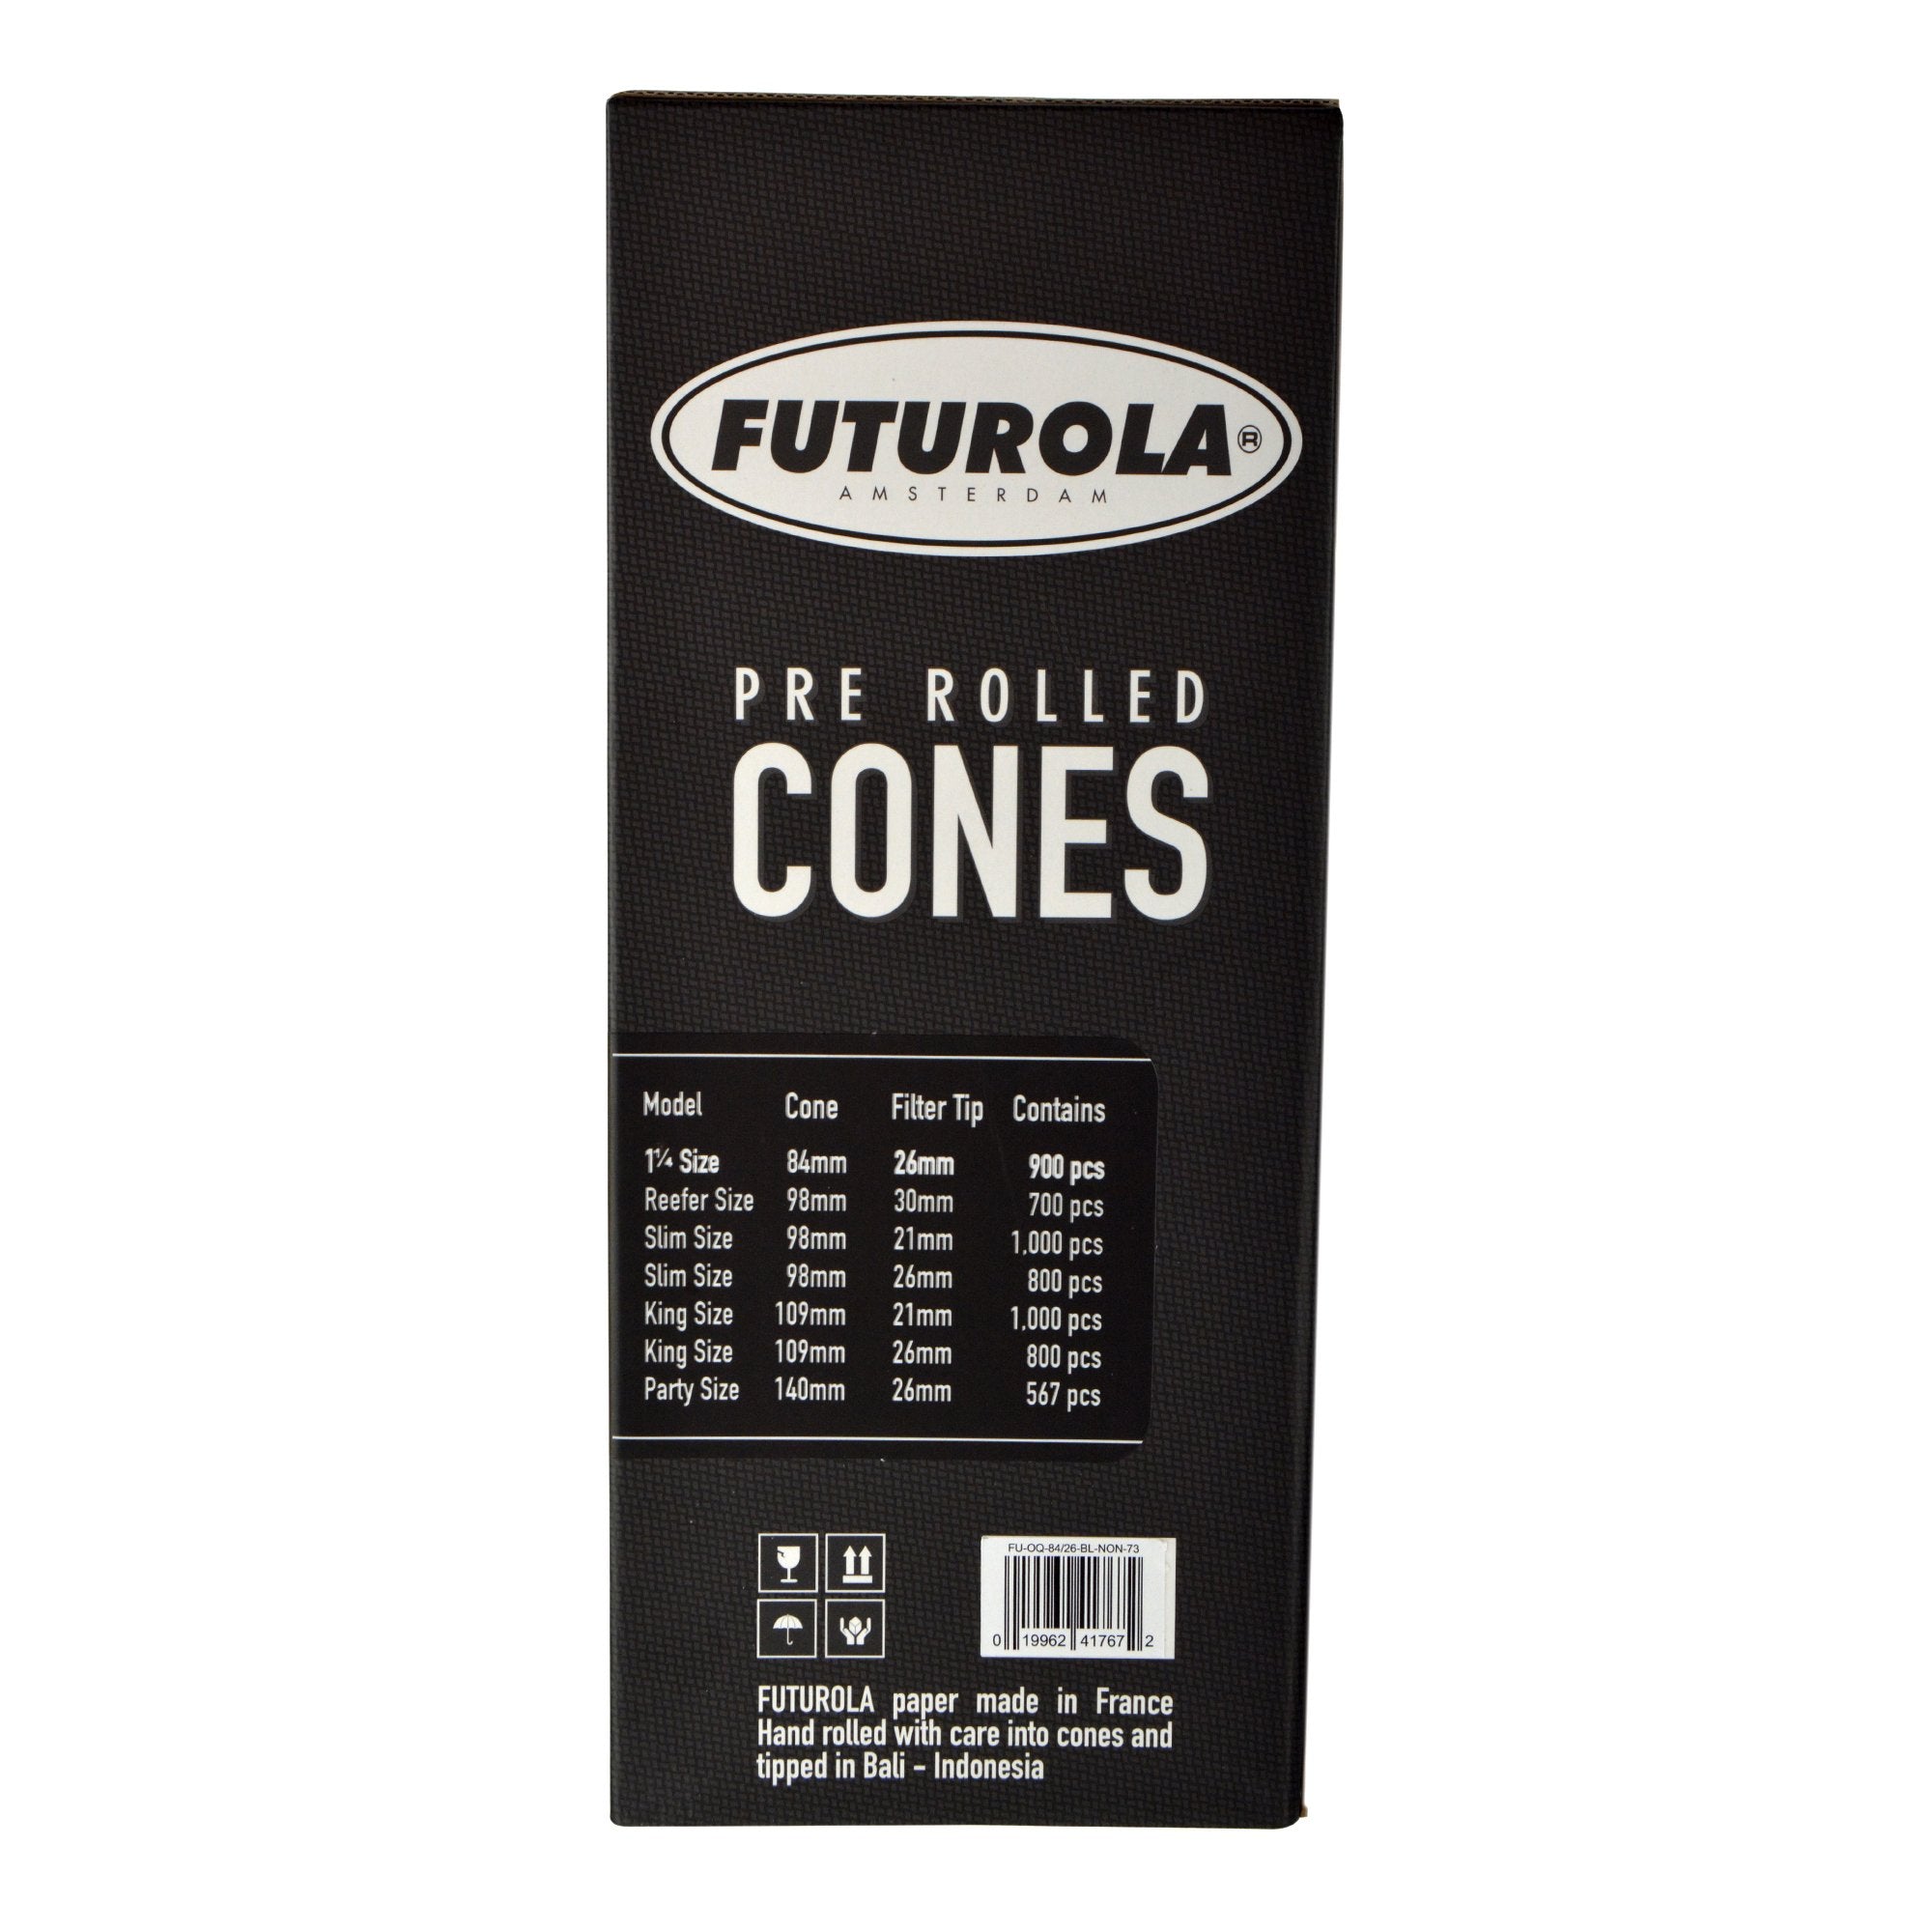 FUTUROLA | 1 1/4 Size Pre-Rolled Cones | 84mm - Classic White Paper - 900 Count - 3